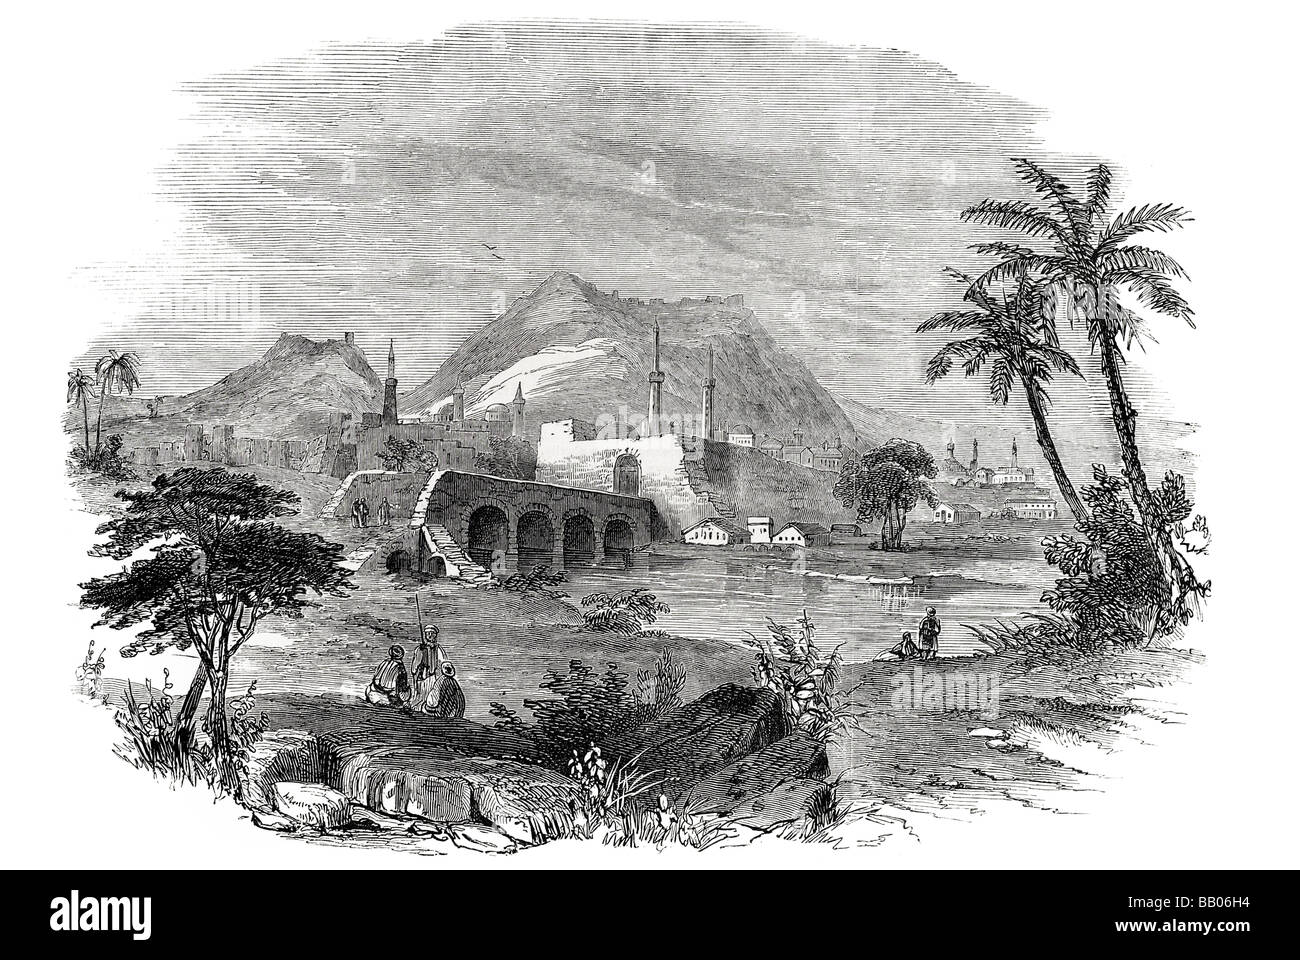 Antioche la vallée de l'Oronte l'euphrate route de l'Inde mosquée construction de pont désert montagneux palmier arbustes ruine Banque D'Images